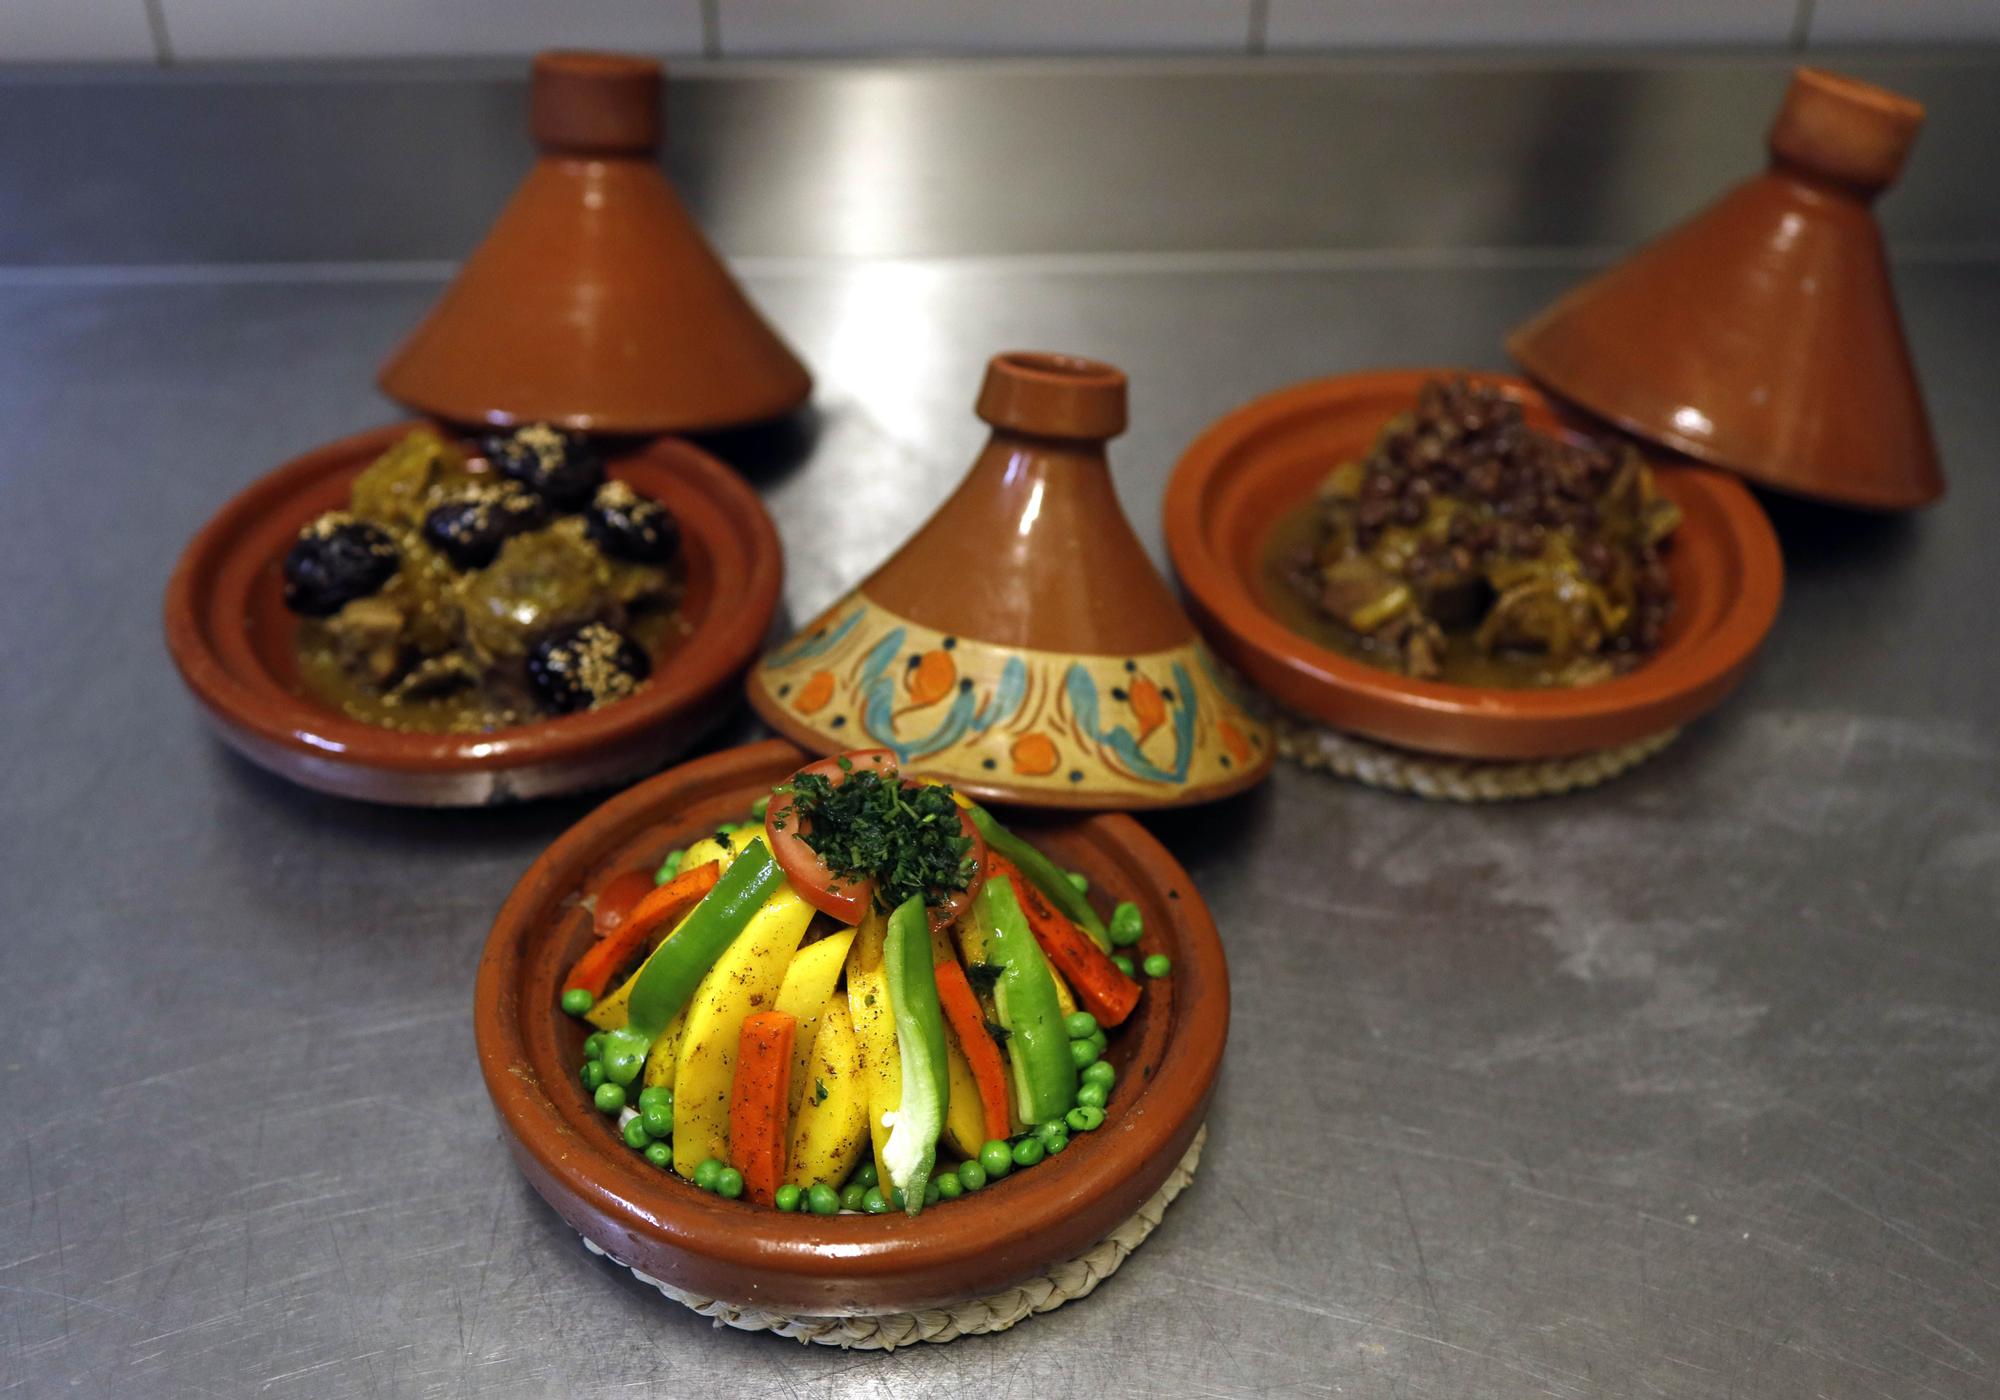 Restaurante El Teatro: un rincón para la gastronomía marroquí en Zaragoza